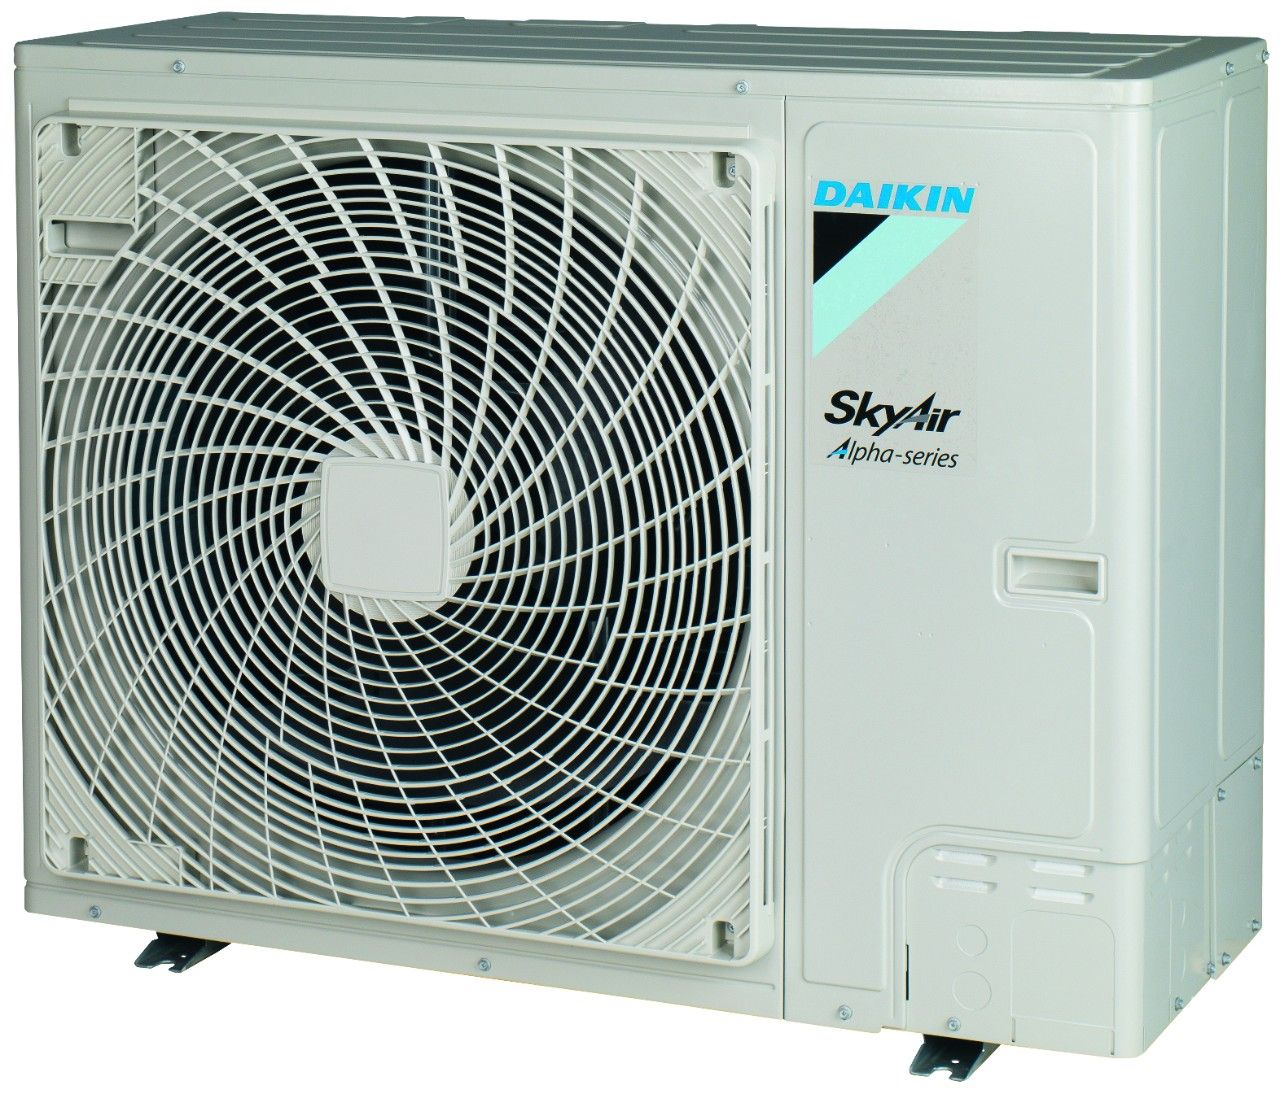 Fua-a / rzag-nv1 - groupes de climatisation & unités extérieures - daikin - puissance frigorifique 6.80 à 12.1 kw_0